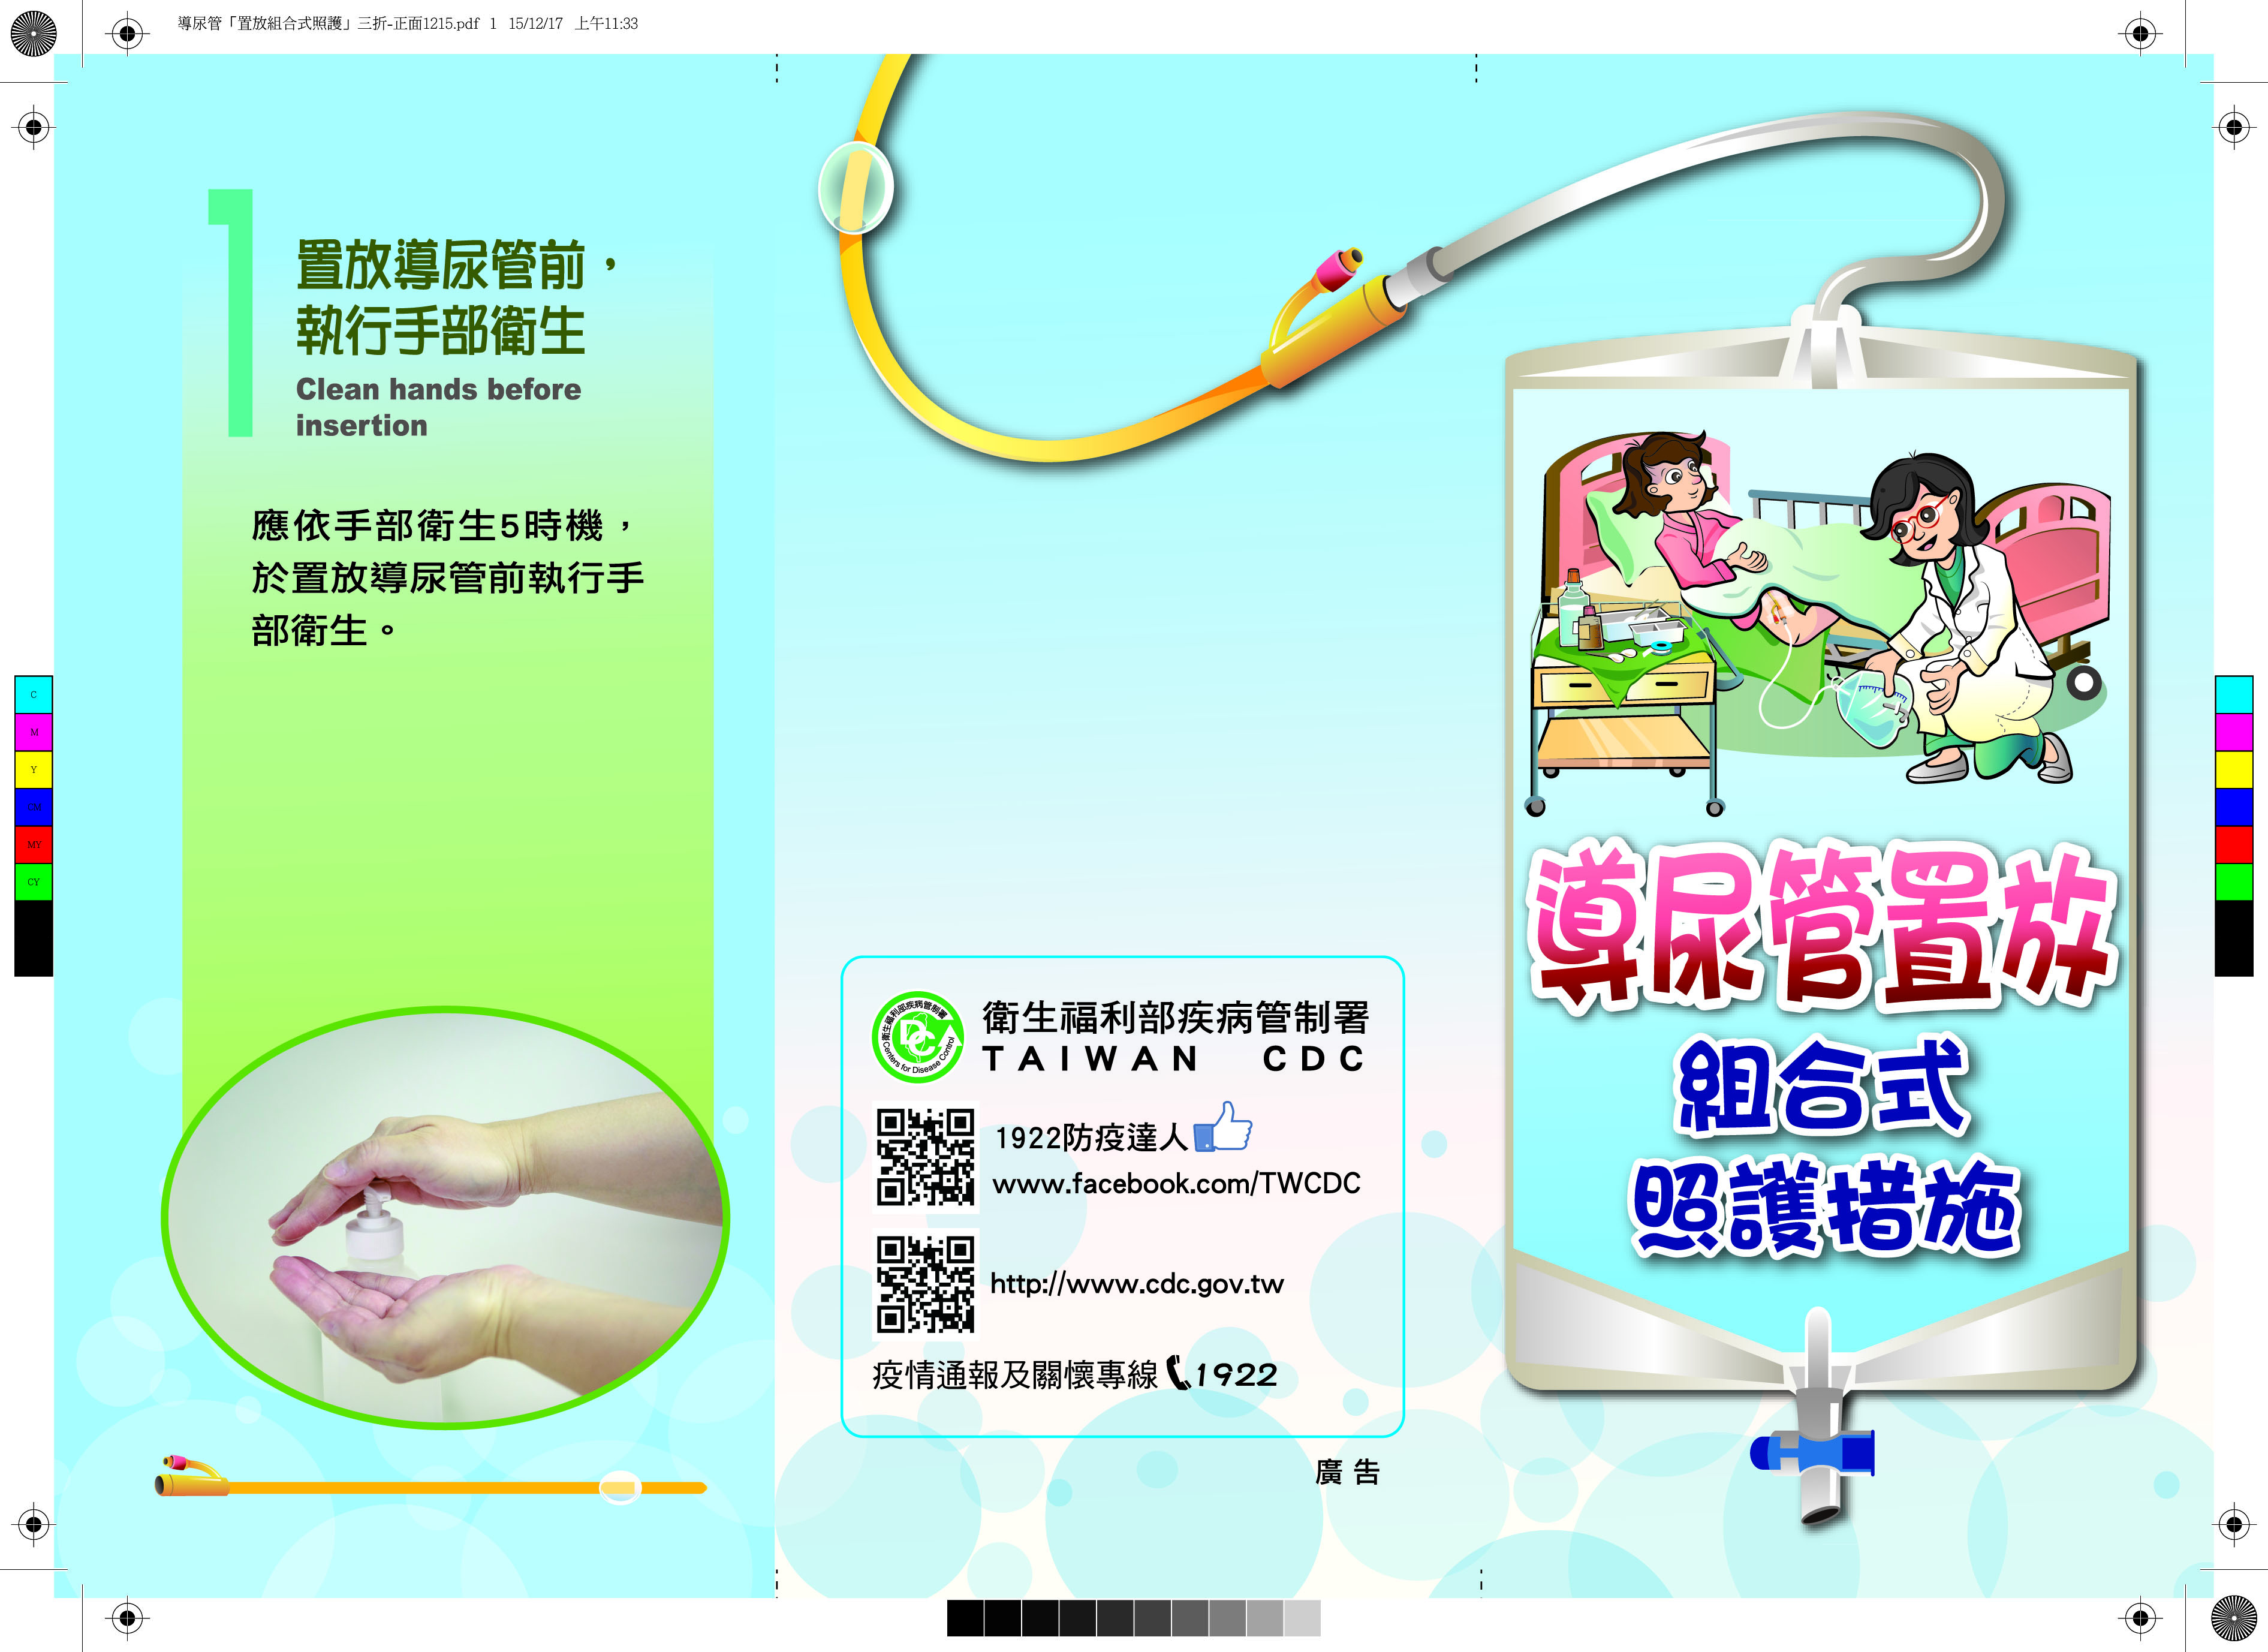 「導尿管置放組合視照護措施」衛教單張-(2015年製)